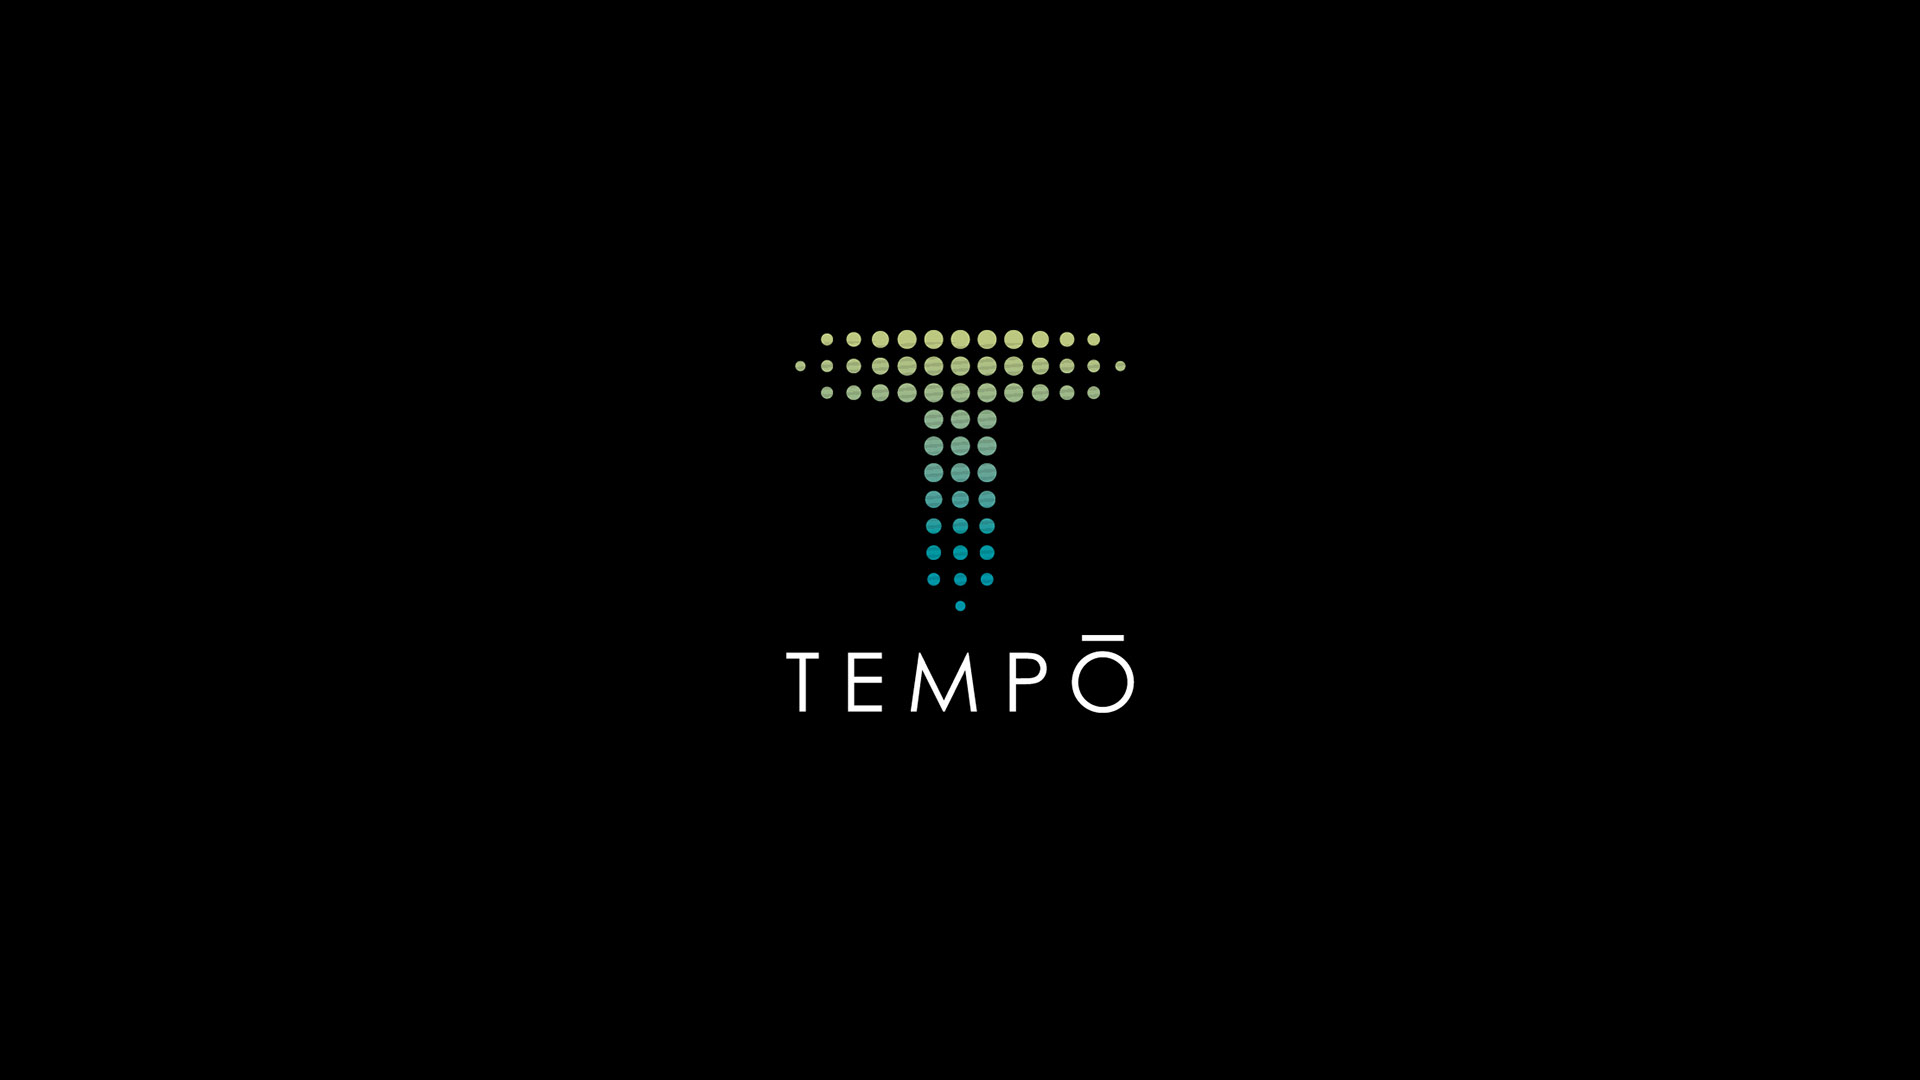 tempo apartments logo on black